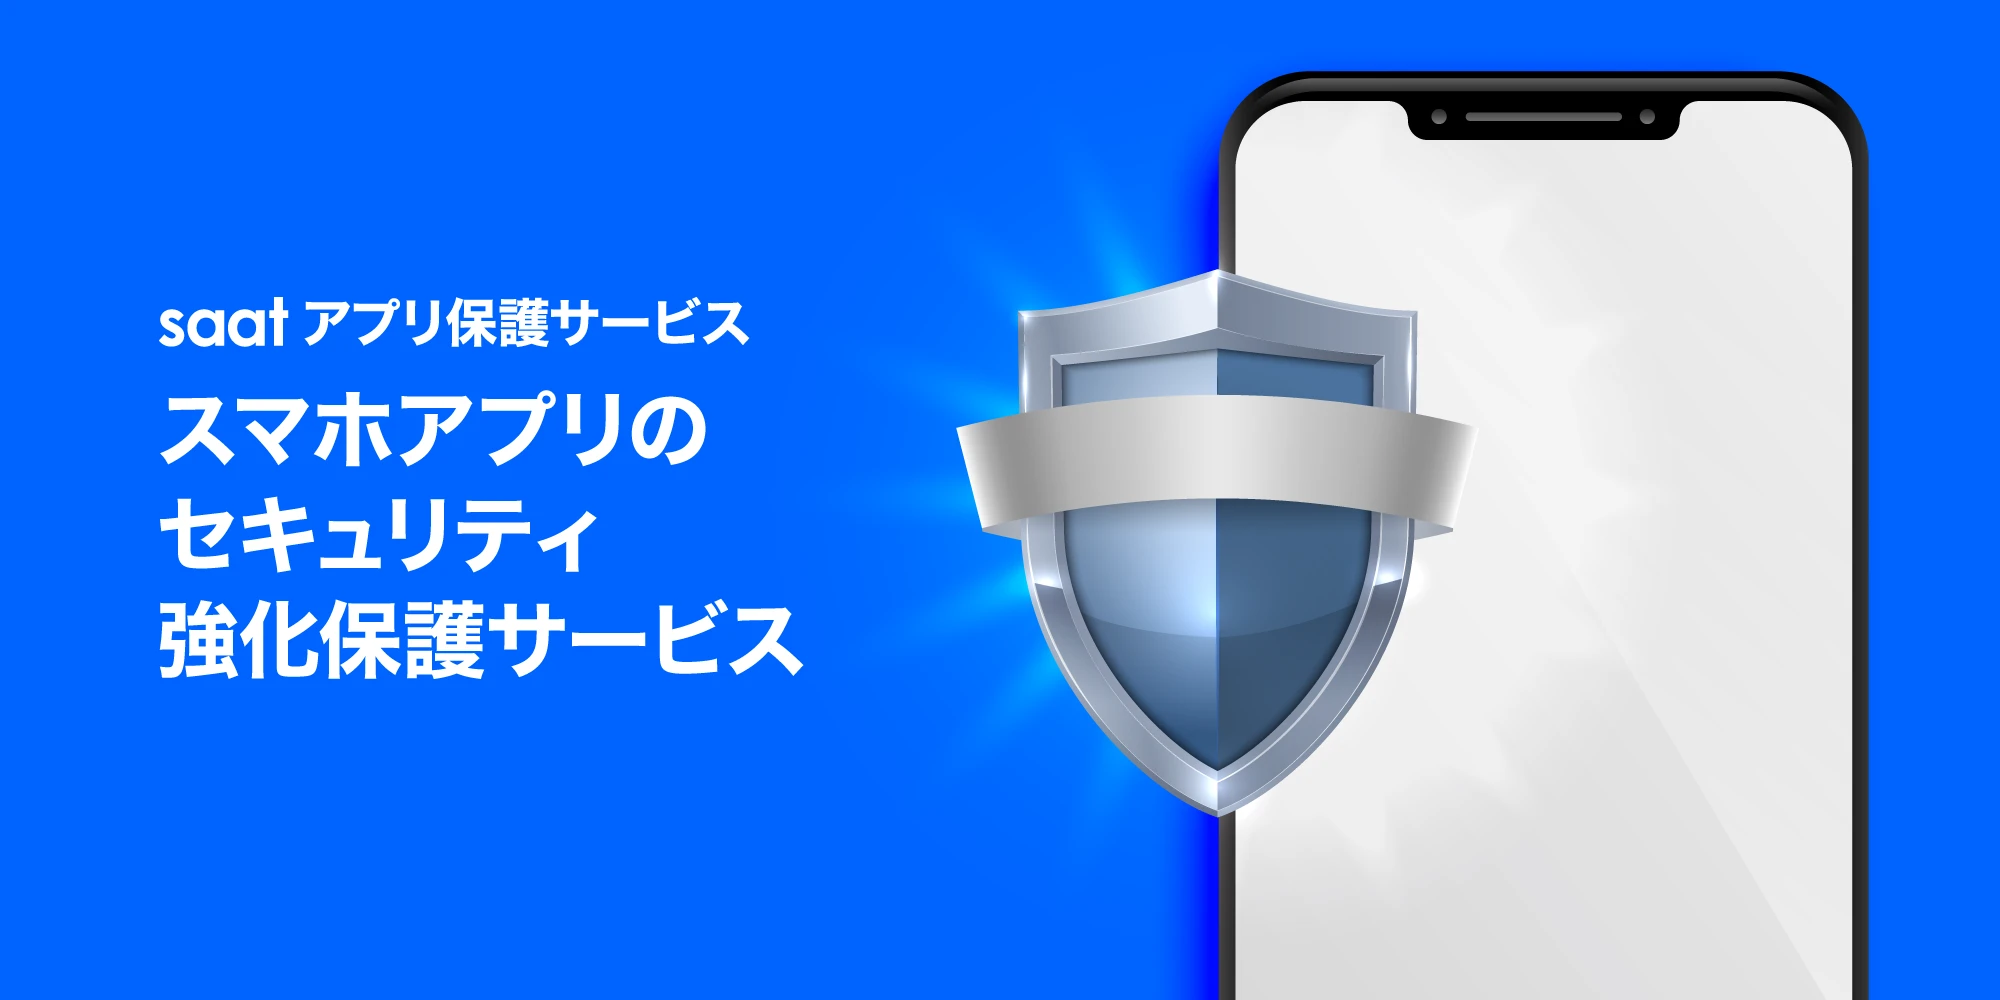 スマホアプリのセキュリティ強化保護サービス